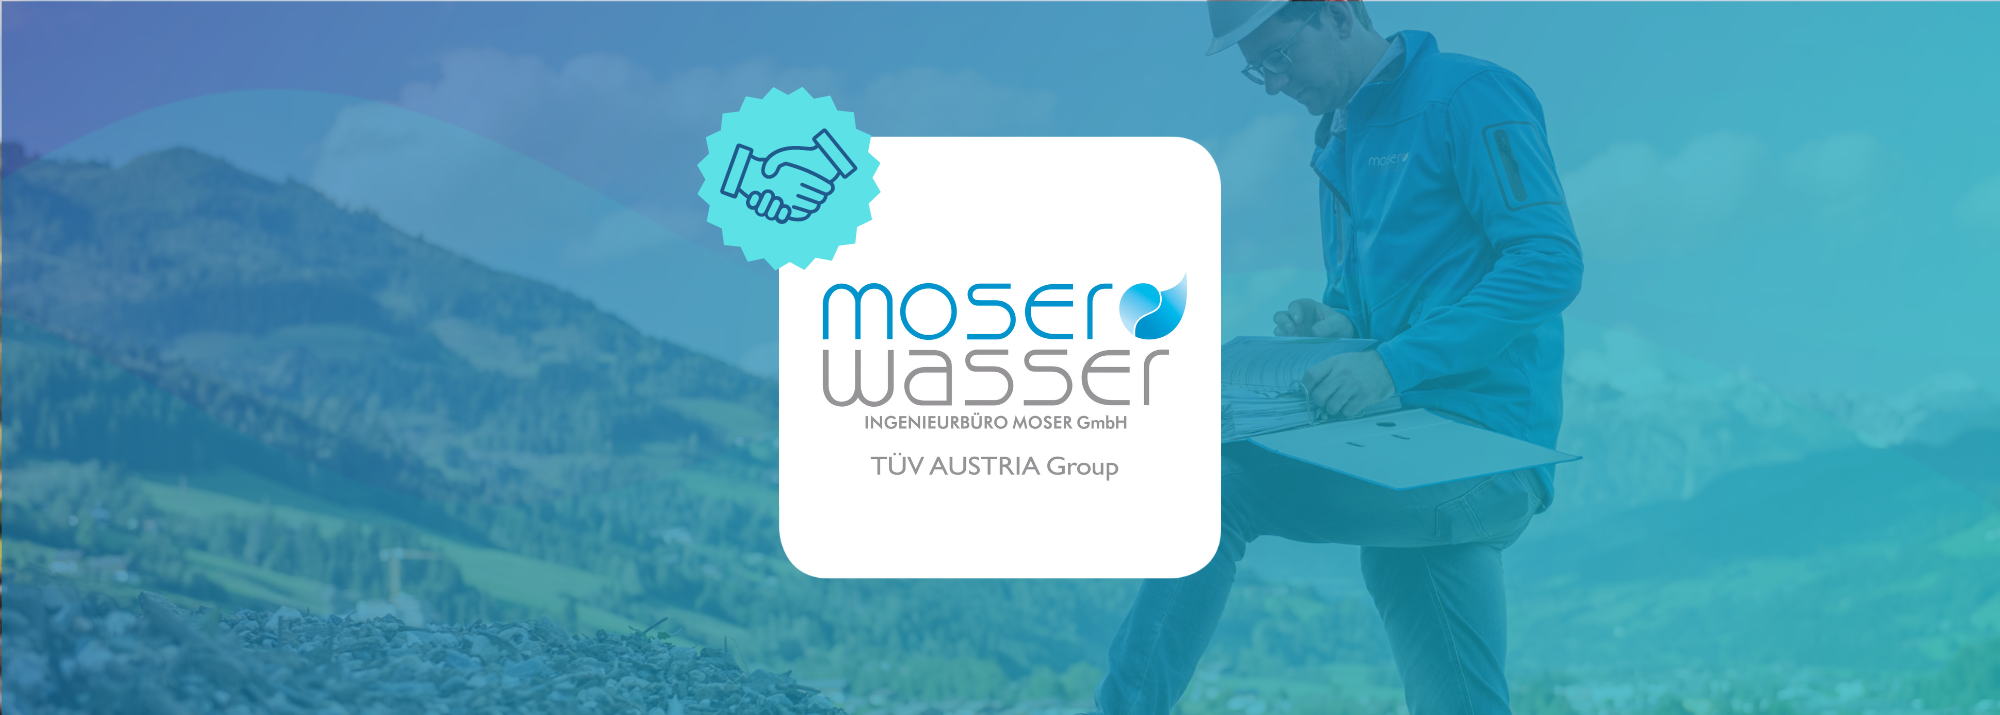 Neuer Partner für Symvaro: Moser Wasser